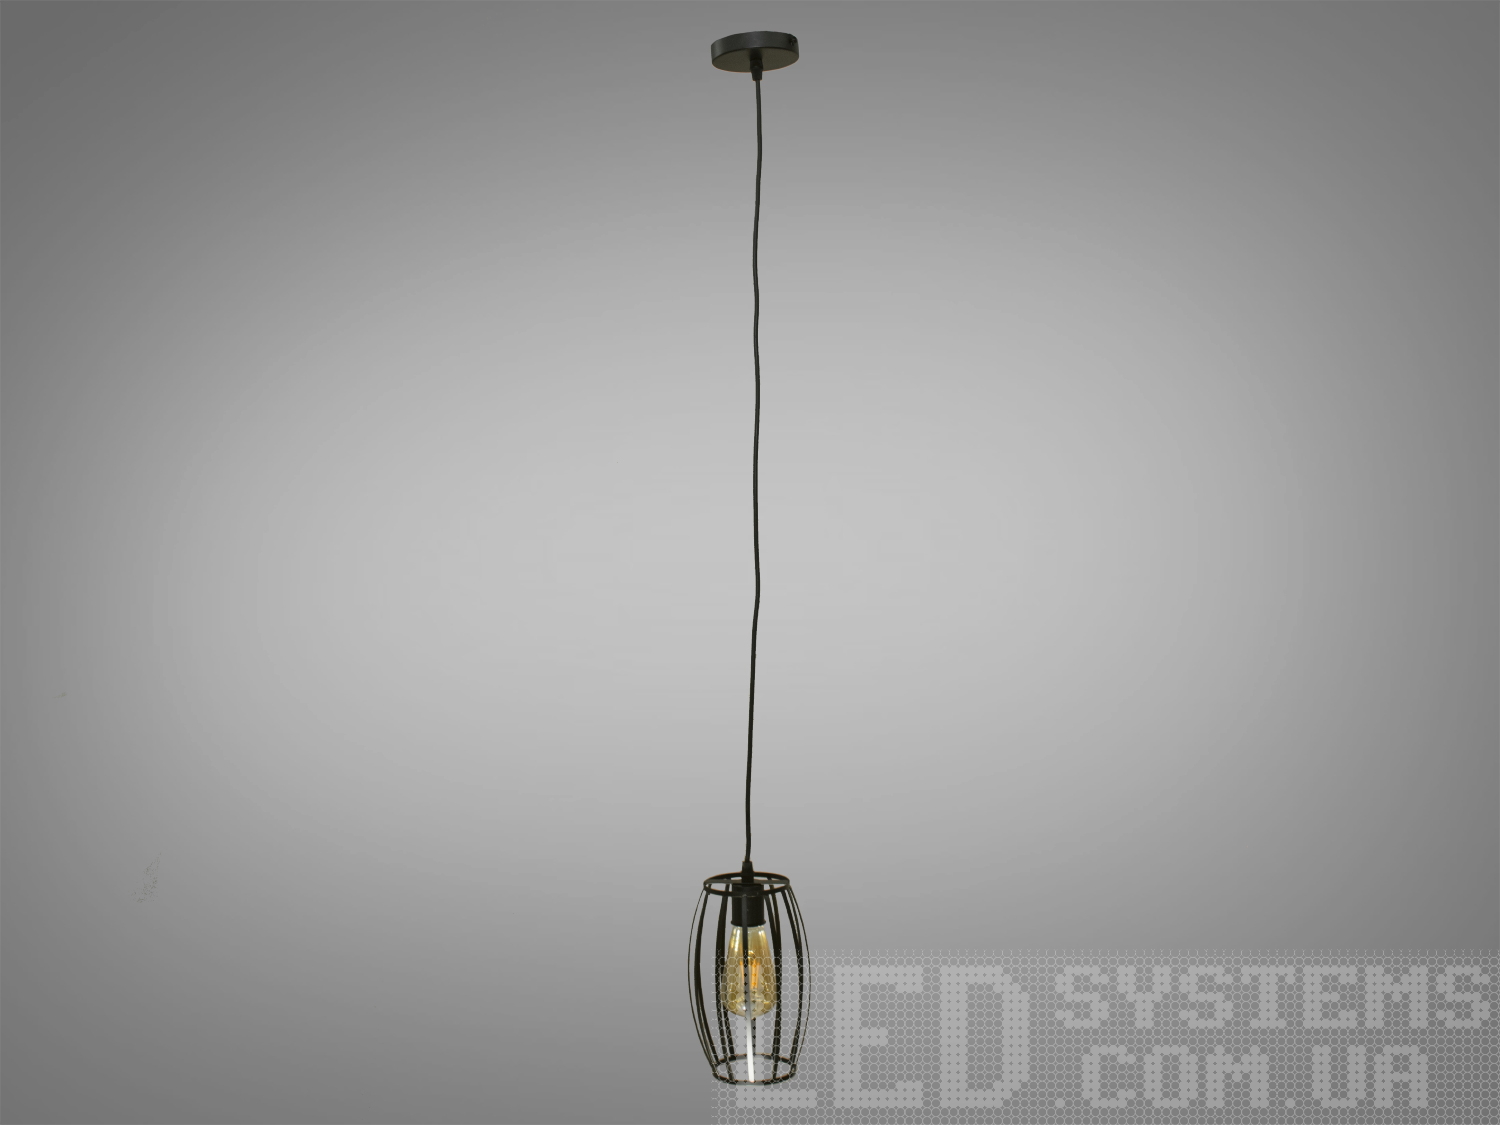 Світильник підвіс в стилі лофт, який ідеально підходить під лампочку Едісона, об'єднує  у собі вишуканість  та  індустріальний шарм. Його дизайн підкреслює автентичність та теплоту лампочки Едісона, створюючи унікальний елемент декору та освітлення.
Характеристики світильника:
Лампа Едісона як центральний елемент: Спеціально розроблений дизайн, що виділяє та підкреслює лампу Едісона як центральний елемент світильника. Застосування лампи Едісона з декоративними нитками або нестандартною формою додає виробу вишуканості та тепла. Лампочка Едісона надає приємне приглушене світло, створюючи тепло та затишну атмосферу в місці розташування світильника.
Матеріали з індустріальним виглядом: Використовуються металеві або чорні матеріали, що надають індустріальний шарм та вишуканість. Мінімалізм цього світильника підкреслить вашу індивідуальність і відчуття стилю. Металеві елементи можуть мати сліди старіння, підряпини чи інші недоліки, що є характерними для стилю лофт та надають світильнику виразний вигляд.
Лофтовий дизайн: З підвісом у вигляді ланцюга чи троса, грубими металевими деталями та відкритим дизайном, що додає стиль лофту. Стиль «Лофт» зараз дуже популярний, його люблять як творчі особистості, так і вельми практичні люди, які віддають перевагу комфорту і простоті в інтер'єрі. Світильники в стилі «лофт» ідеально впишуться в сучасні будинки, квартири, кафе, арт-простори, коворкінги, квеструми.
Підвісний світильник ідеально поєднується з іншими індустріальними деталями, такими як відкриті труби, цегла або металеві стільниці.
Можливість регулювання висоти: Дозволяє легко адаптувати світильник до різних просторових умов.
Сфери використання:
Ресторани та кафе: Створює тепло та затишне освітлення, ідеально підходить для створення атмосфери в зонах обіду або бару.
Житлові приміщення: Виглядає чудово у вітальнях, кухнях чи спальнях, додаючи індустріальний акцент до інтер'єру.
Магазини та виставкові зони: Створює стильний вигляд для приміщень, де важливий дизайн та видиму привабливість. Вигідно підкреслює стильні товари або предмети мистецтва, надаючи їм індивідуальний вигляд.
Фото- та відеостудії: Забезпечує освітлення з характером для створення унікальних фото чи відеоматеріалів.
Цей світильник-підвіс у стилі лофт з лампочкою Едісона створює особливу атмосферу, де тепло та стиль індустріального дизайну взаємодіють, надаючи приміщенню унікальний і вишуканий вигляд.
Лампа в комплект не входить.